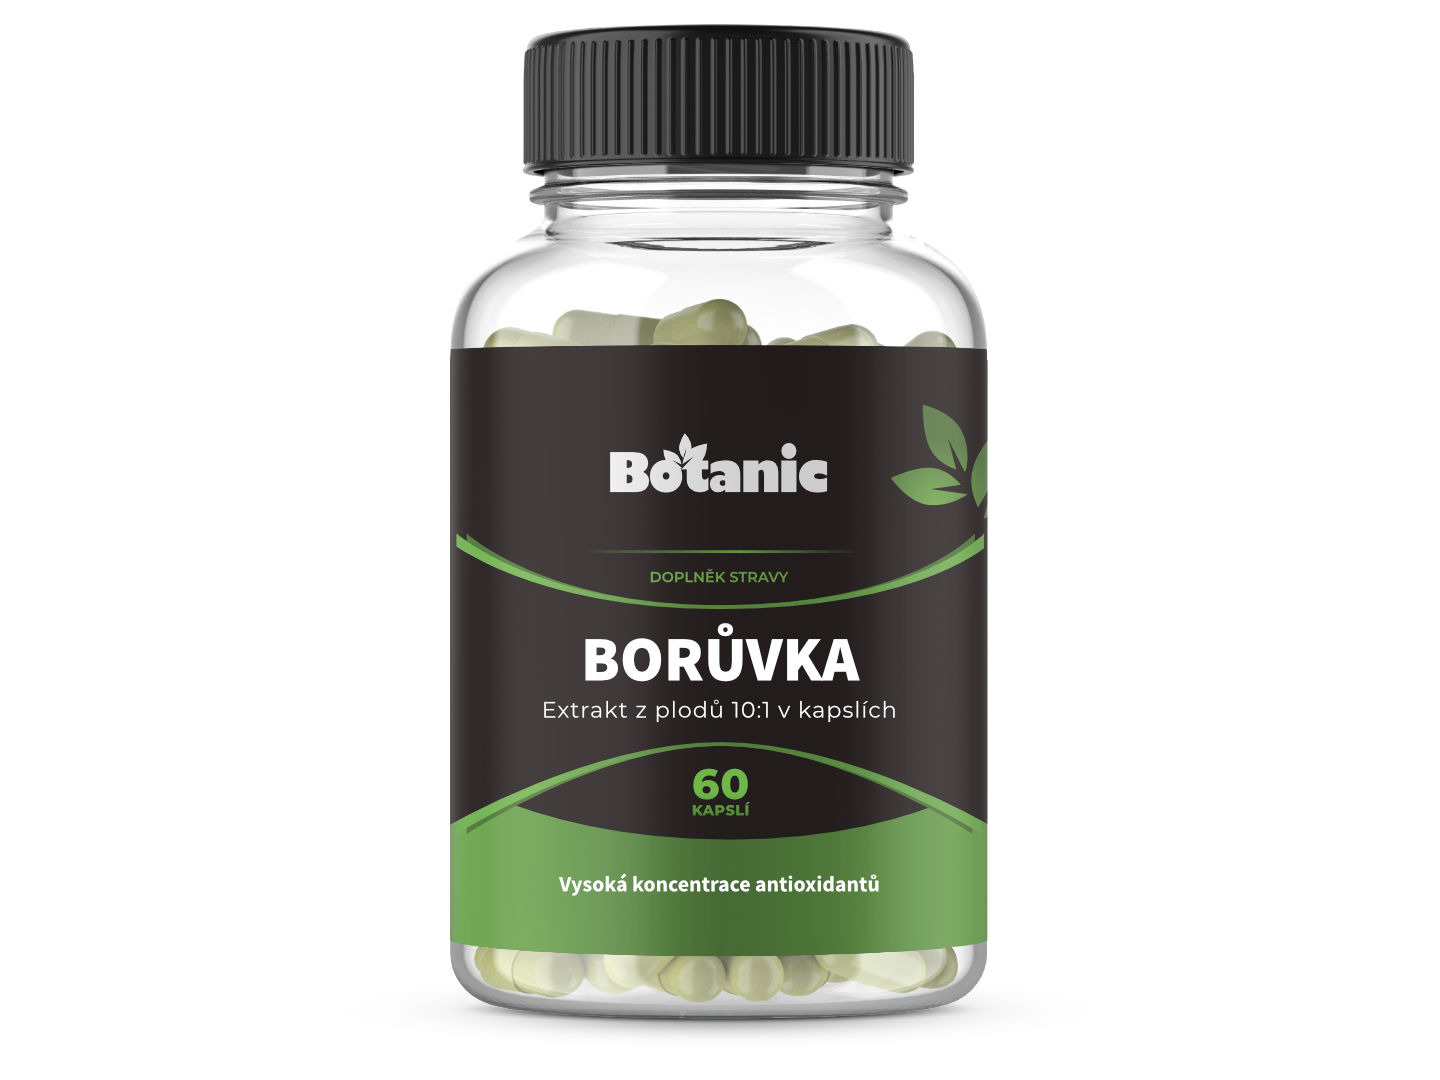 Botanic Borůvka - Extrakt z plodů 10:1 v kapslích 60kap.